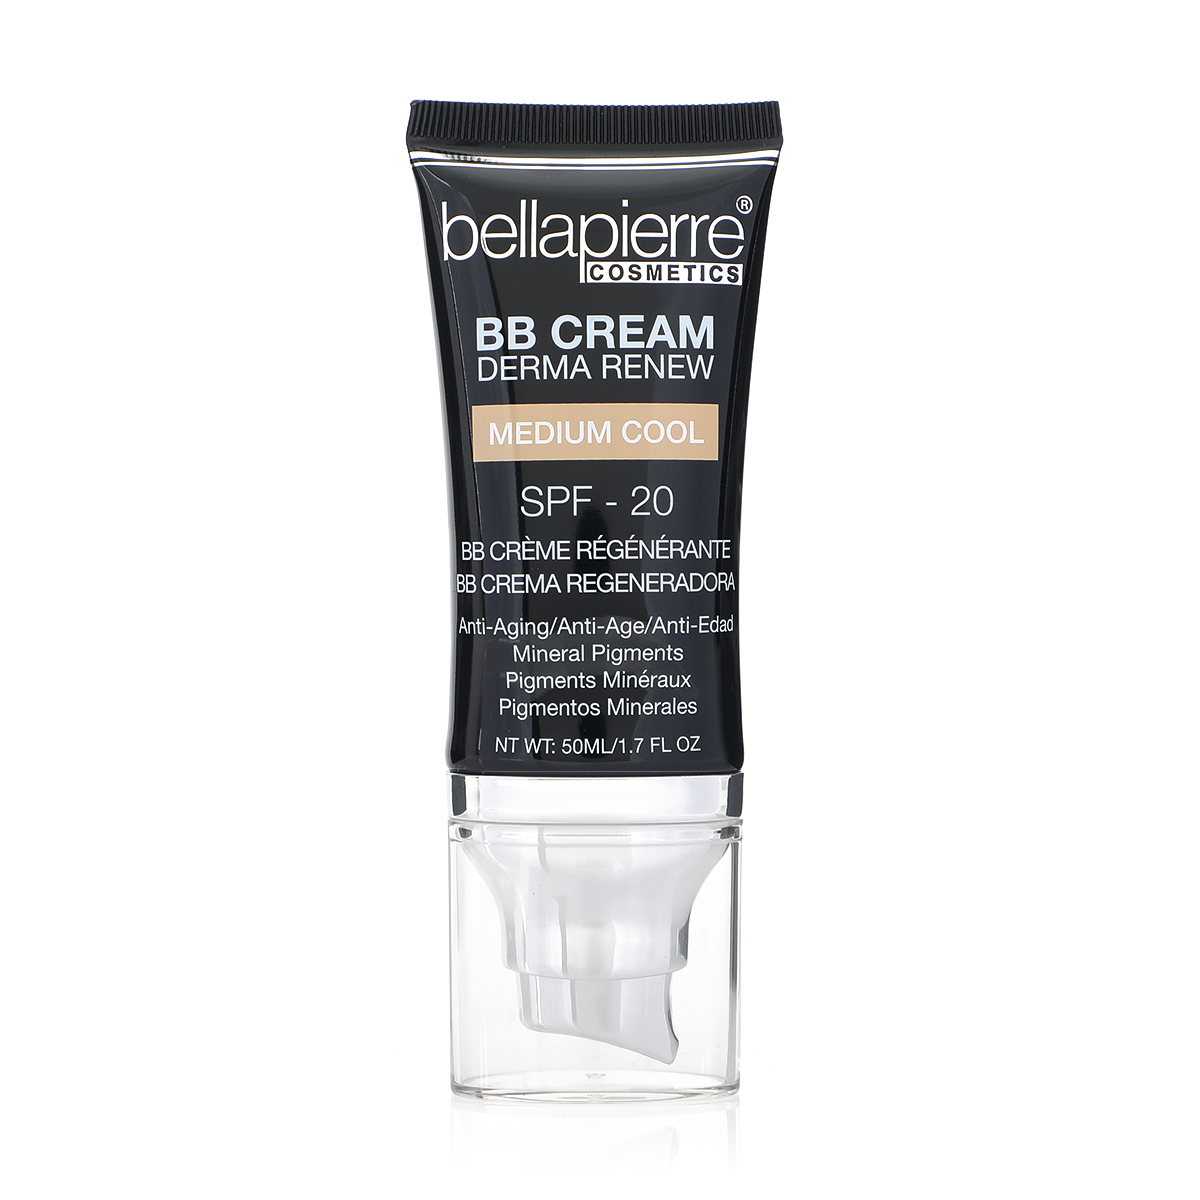 Bellapierre BB Cream SPF 20 - Medium